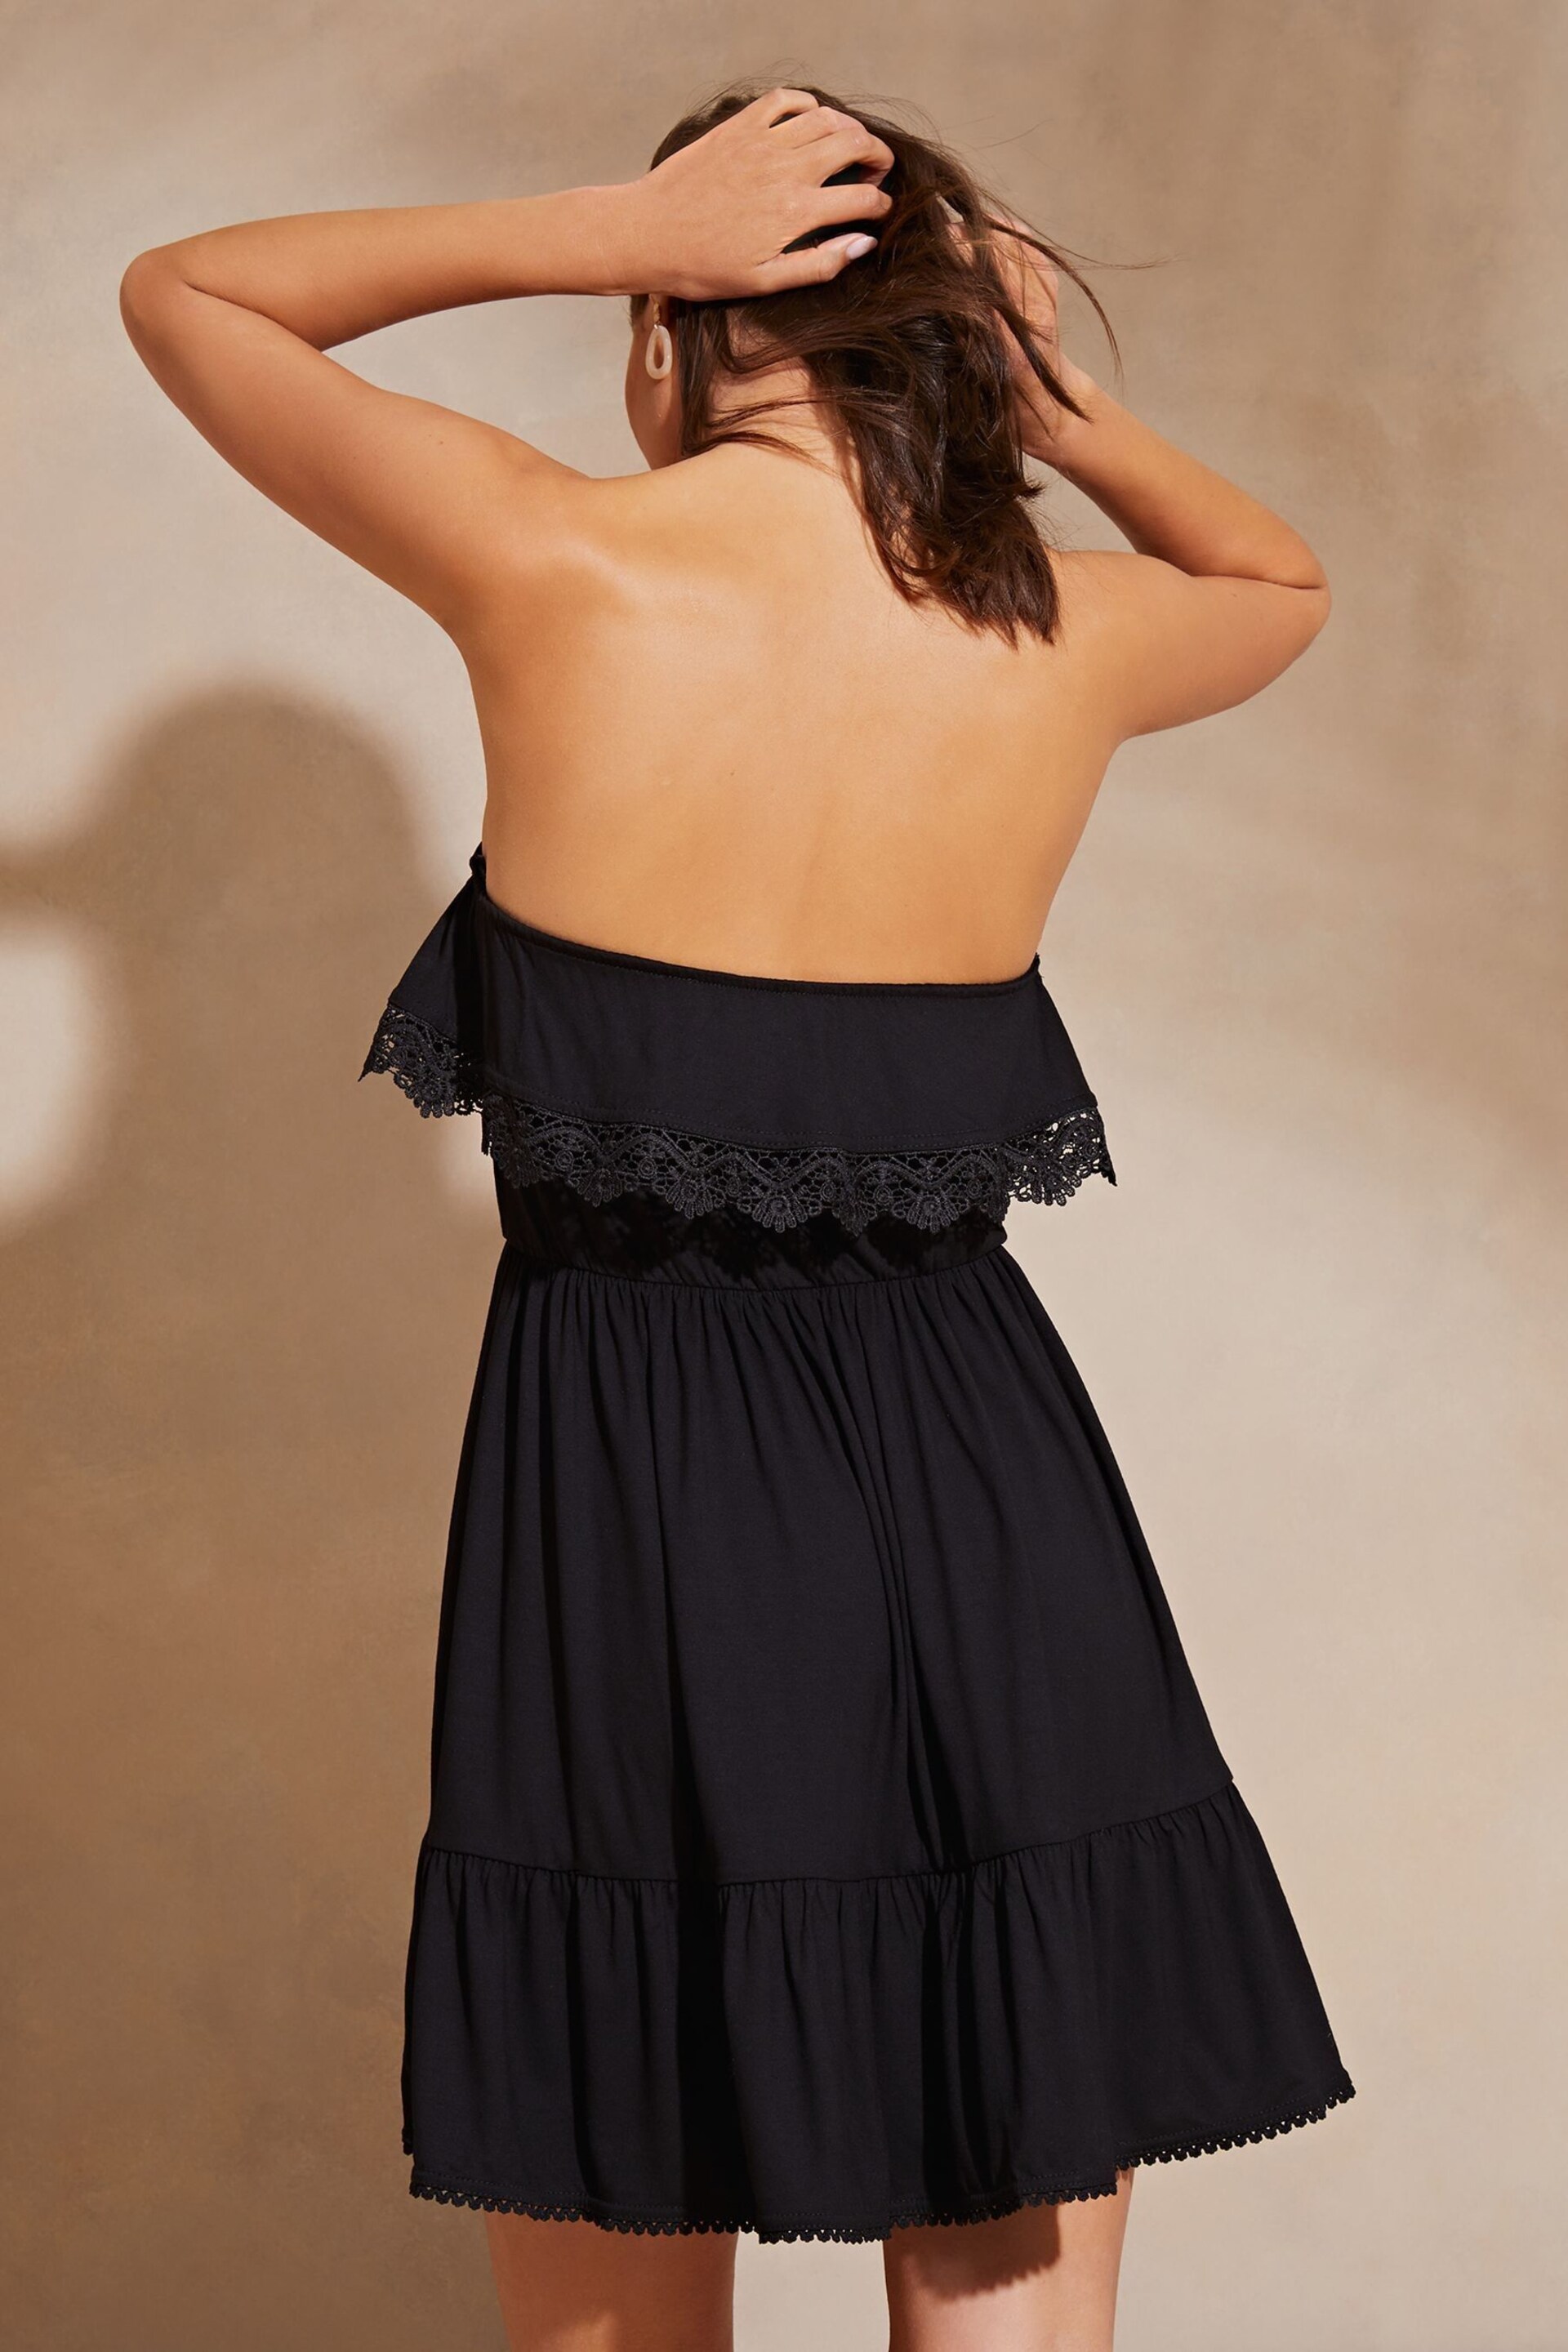 Lipsy Black Petite Bandeau Ruffle Summer Holiday Jersey Mini Dress - Image 2 of 4